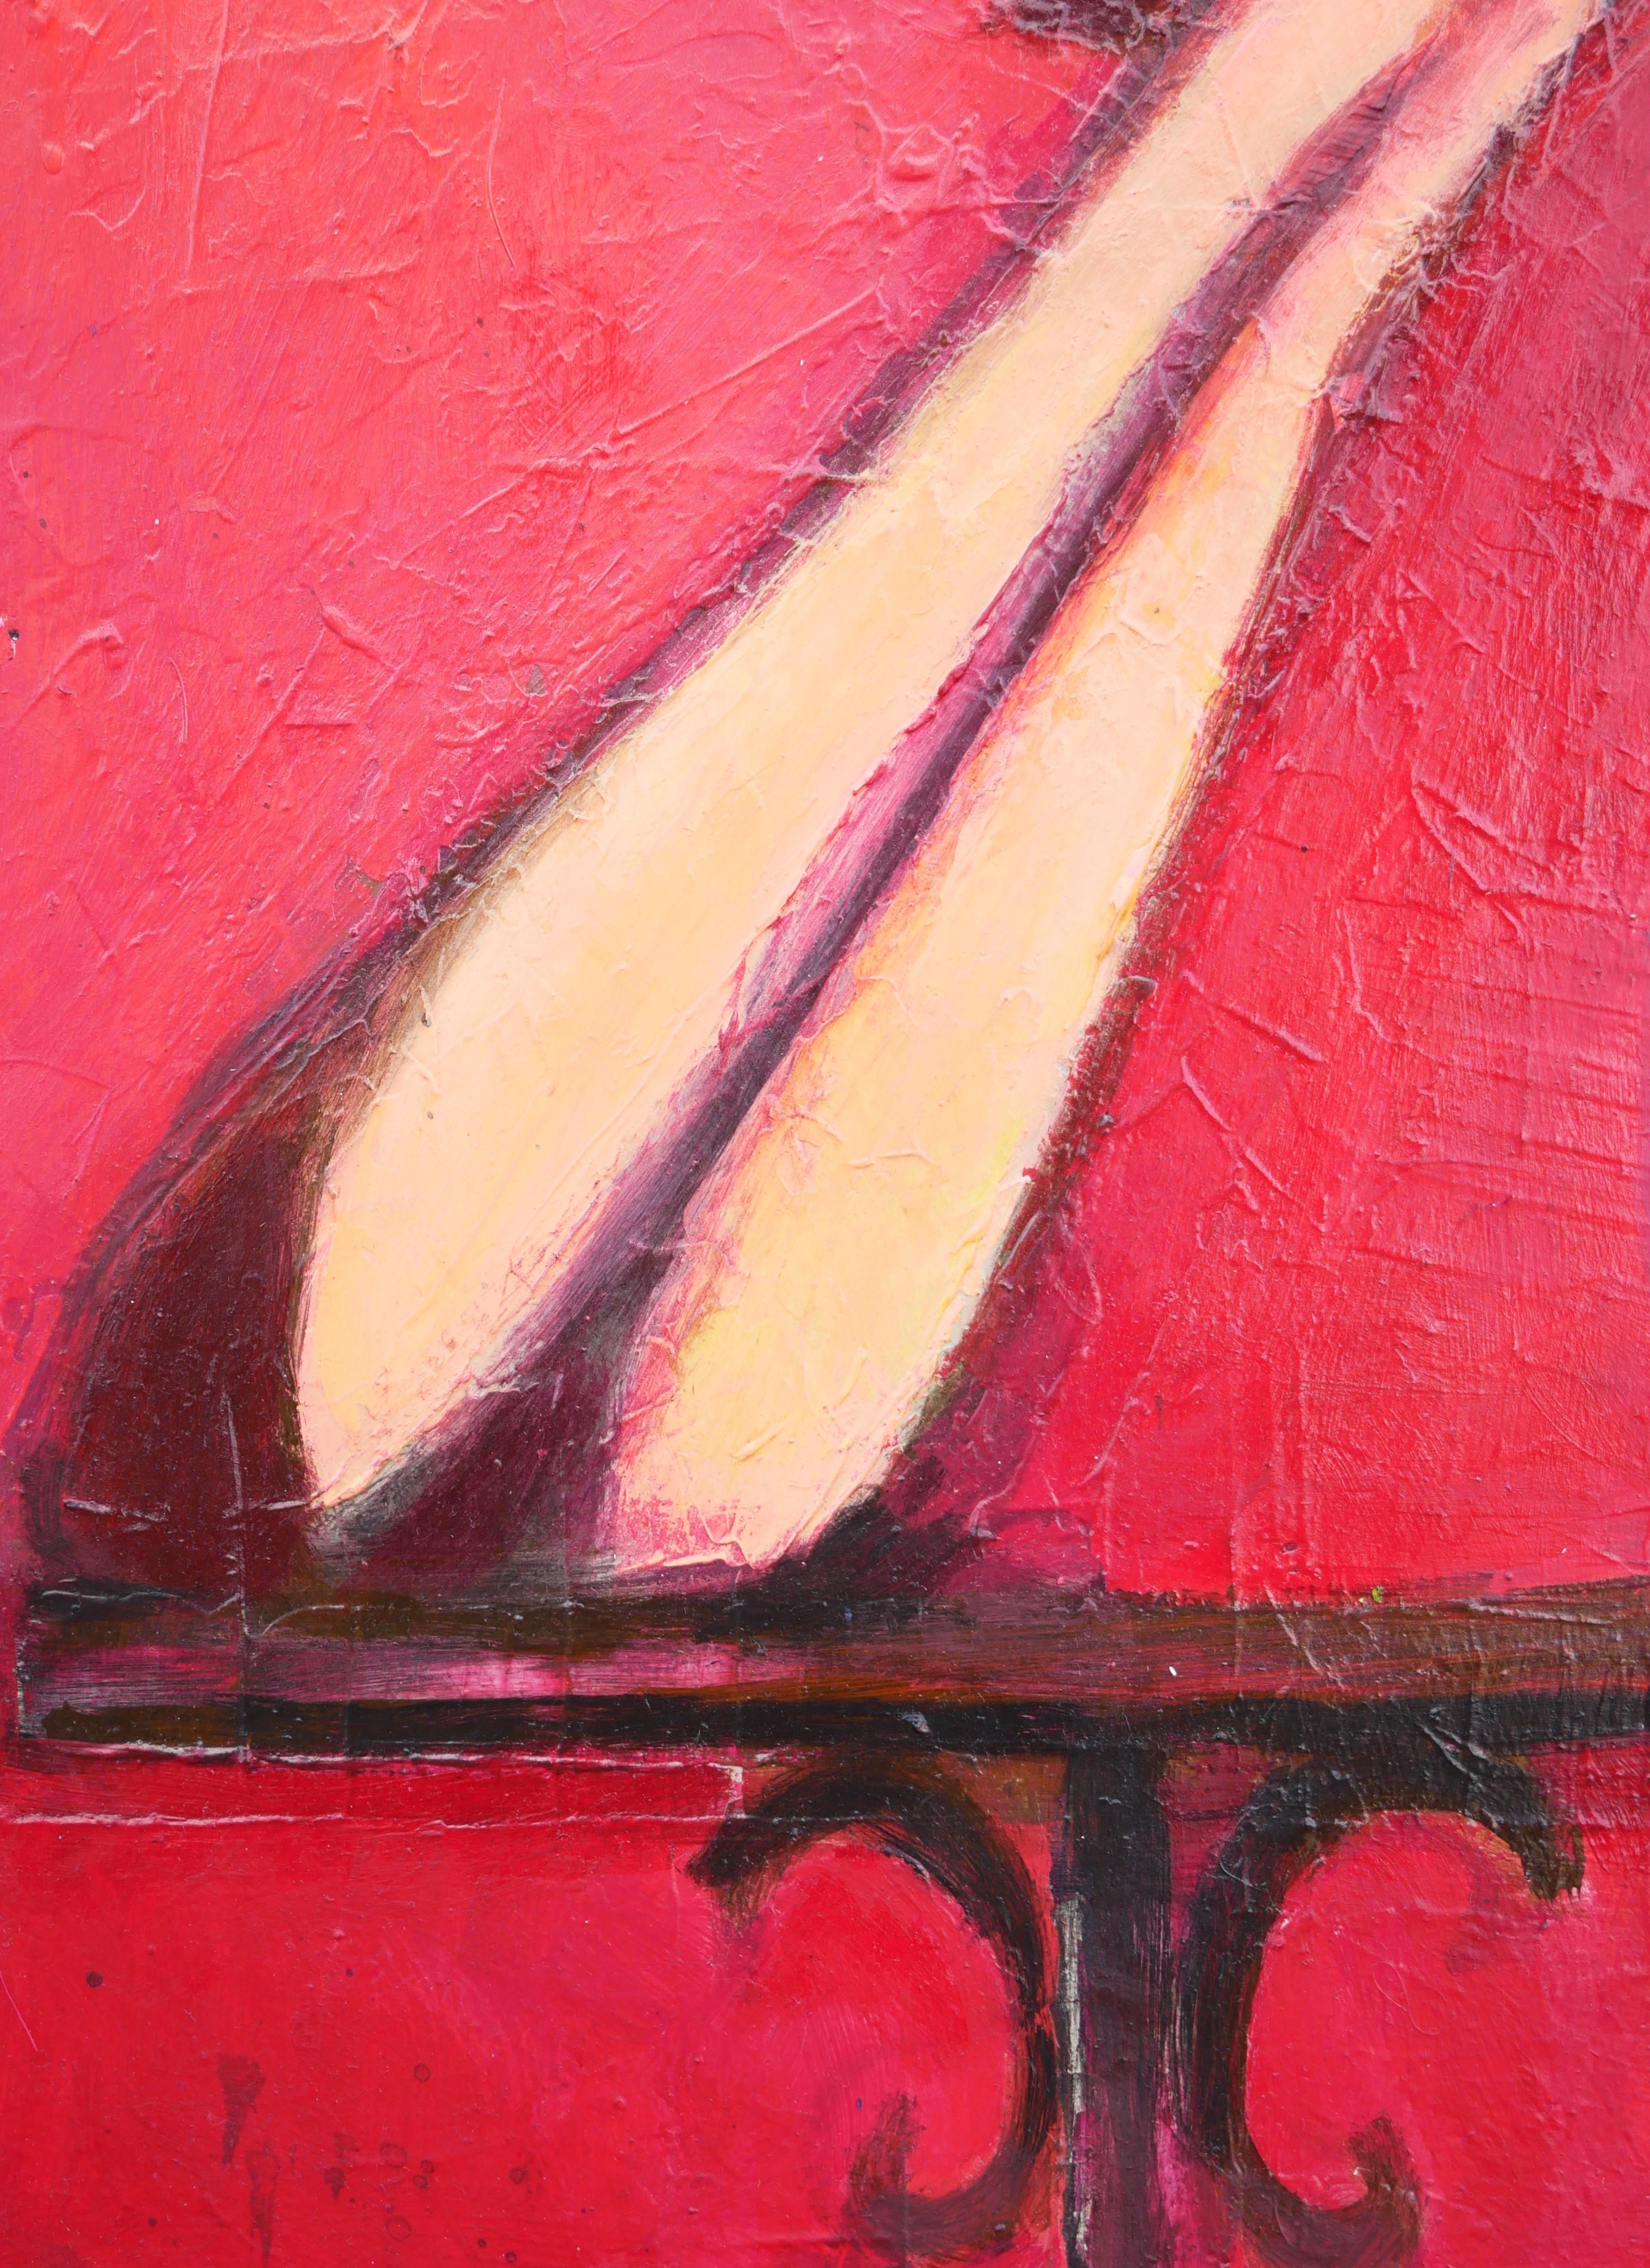 Lady with Cigarette - Peinture figurative abstraite aux tons rouges 3